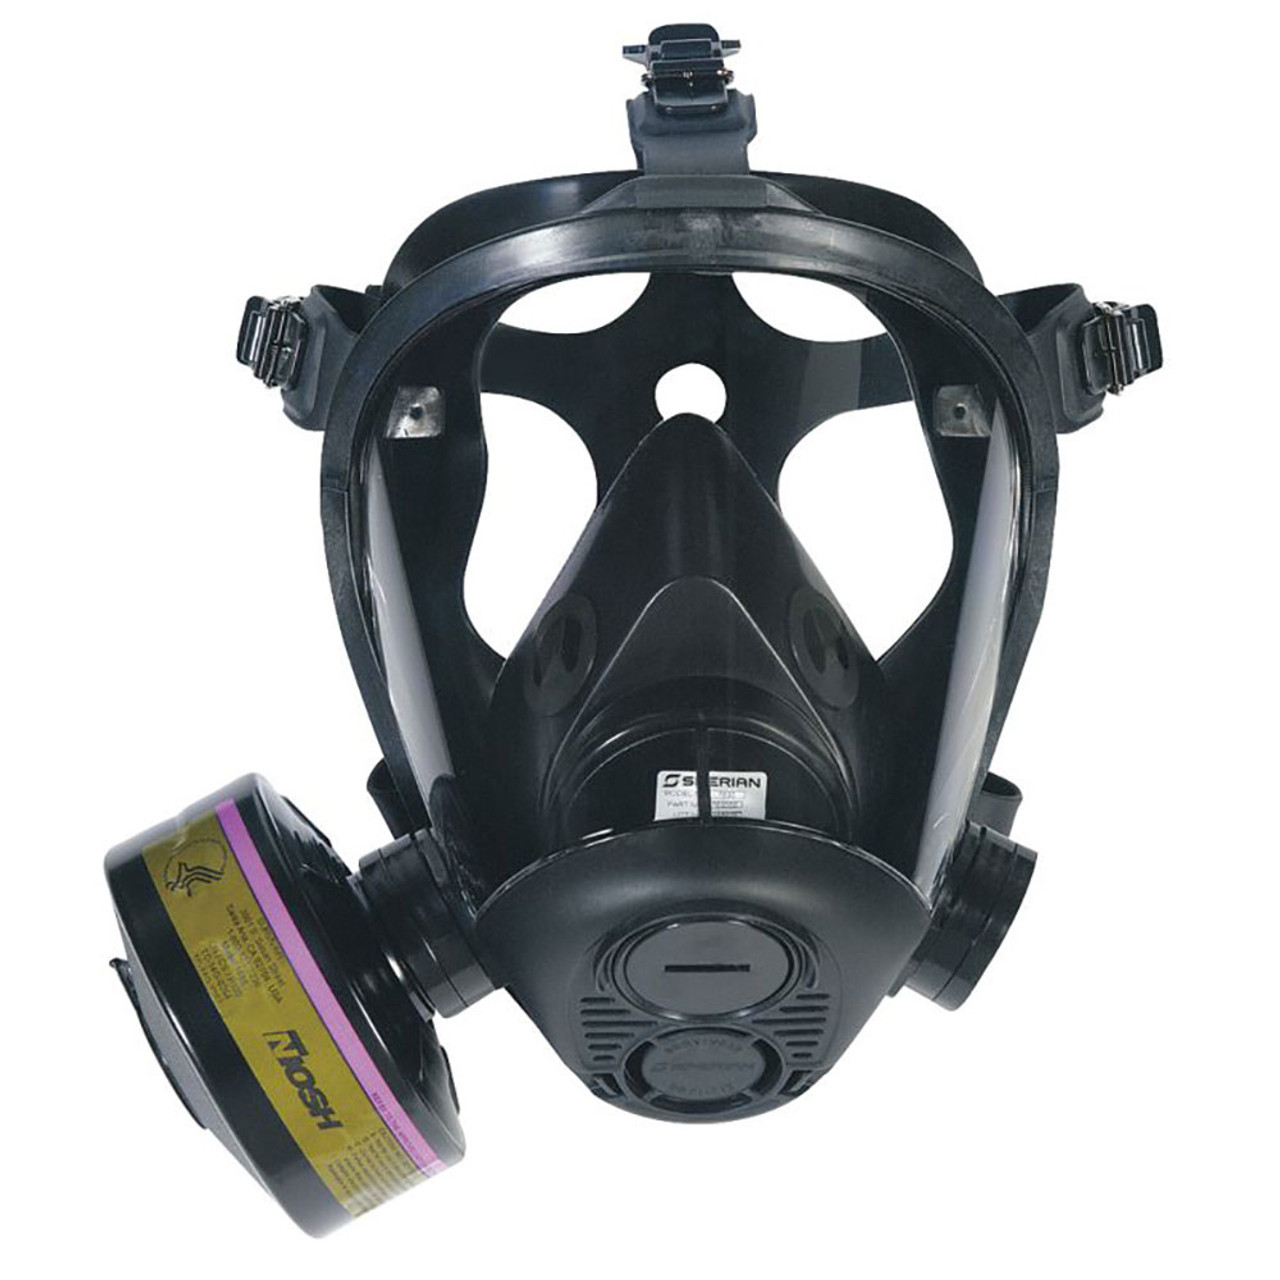 tactical gas mask helmet